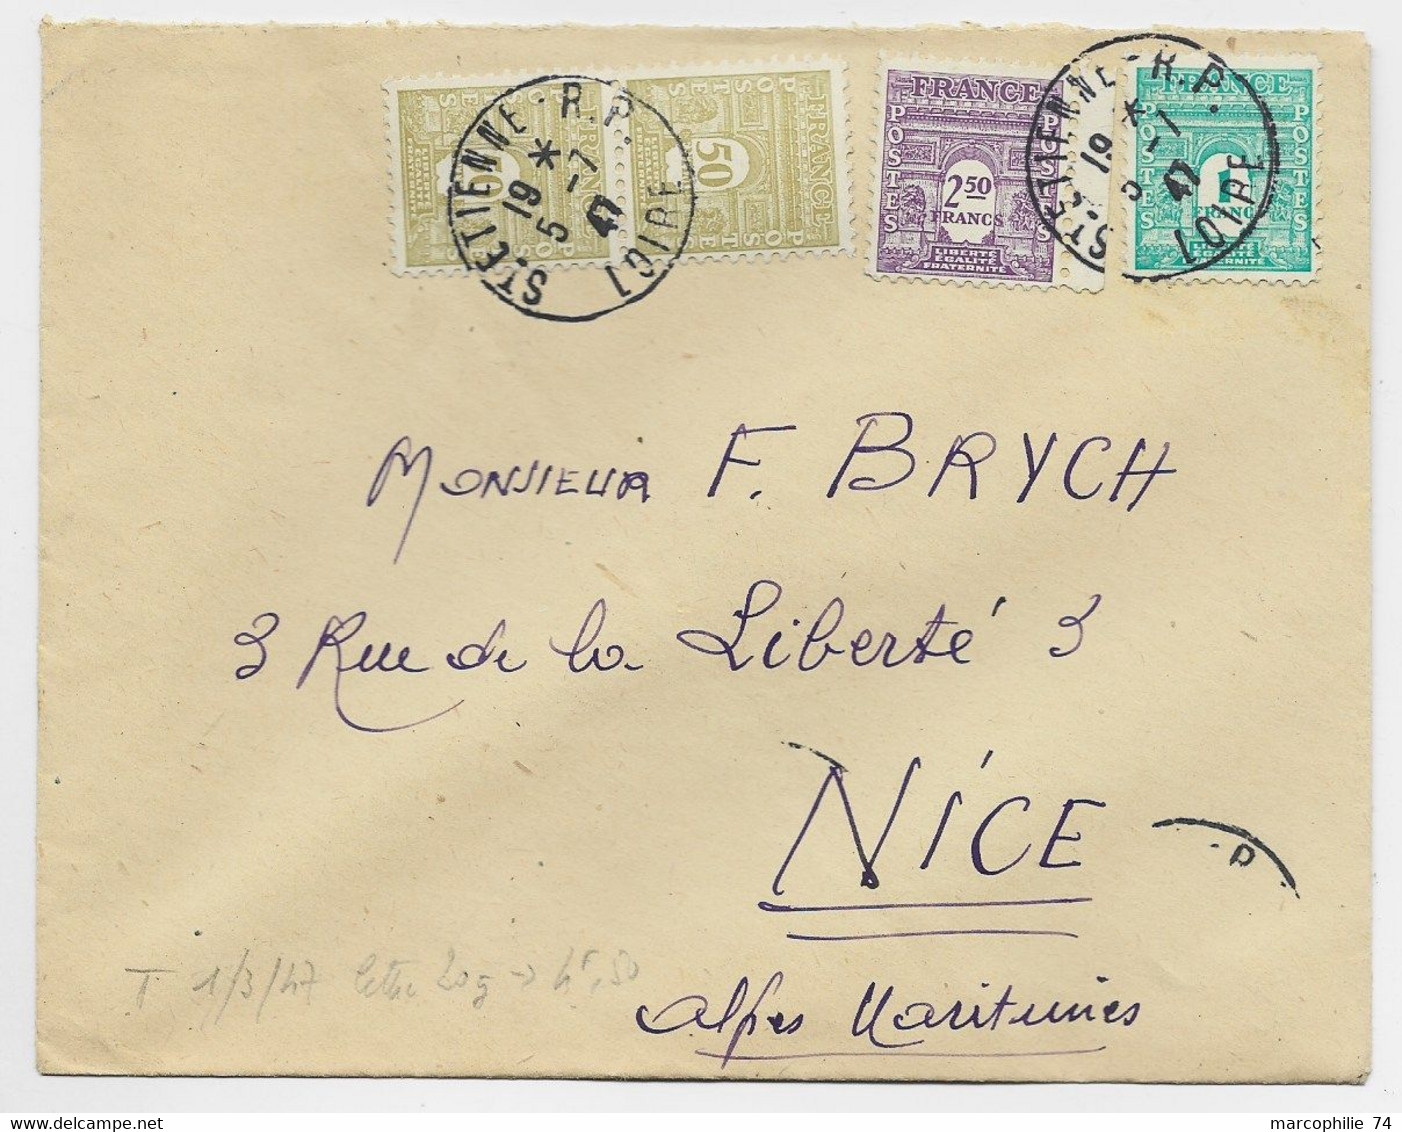 FRANCE ARC TRIOMPHE 2FR50+1FR+50C PAIRE LETTRE COVER ST ETIENNE RP 5.7.1947 AU TARIF - 1944-45 Arc Of Triomphe